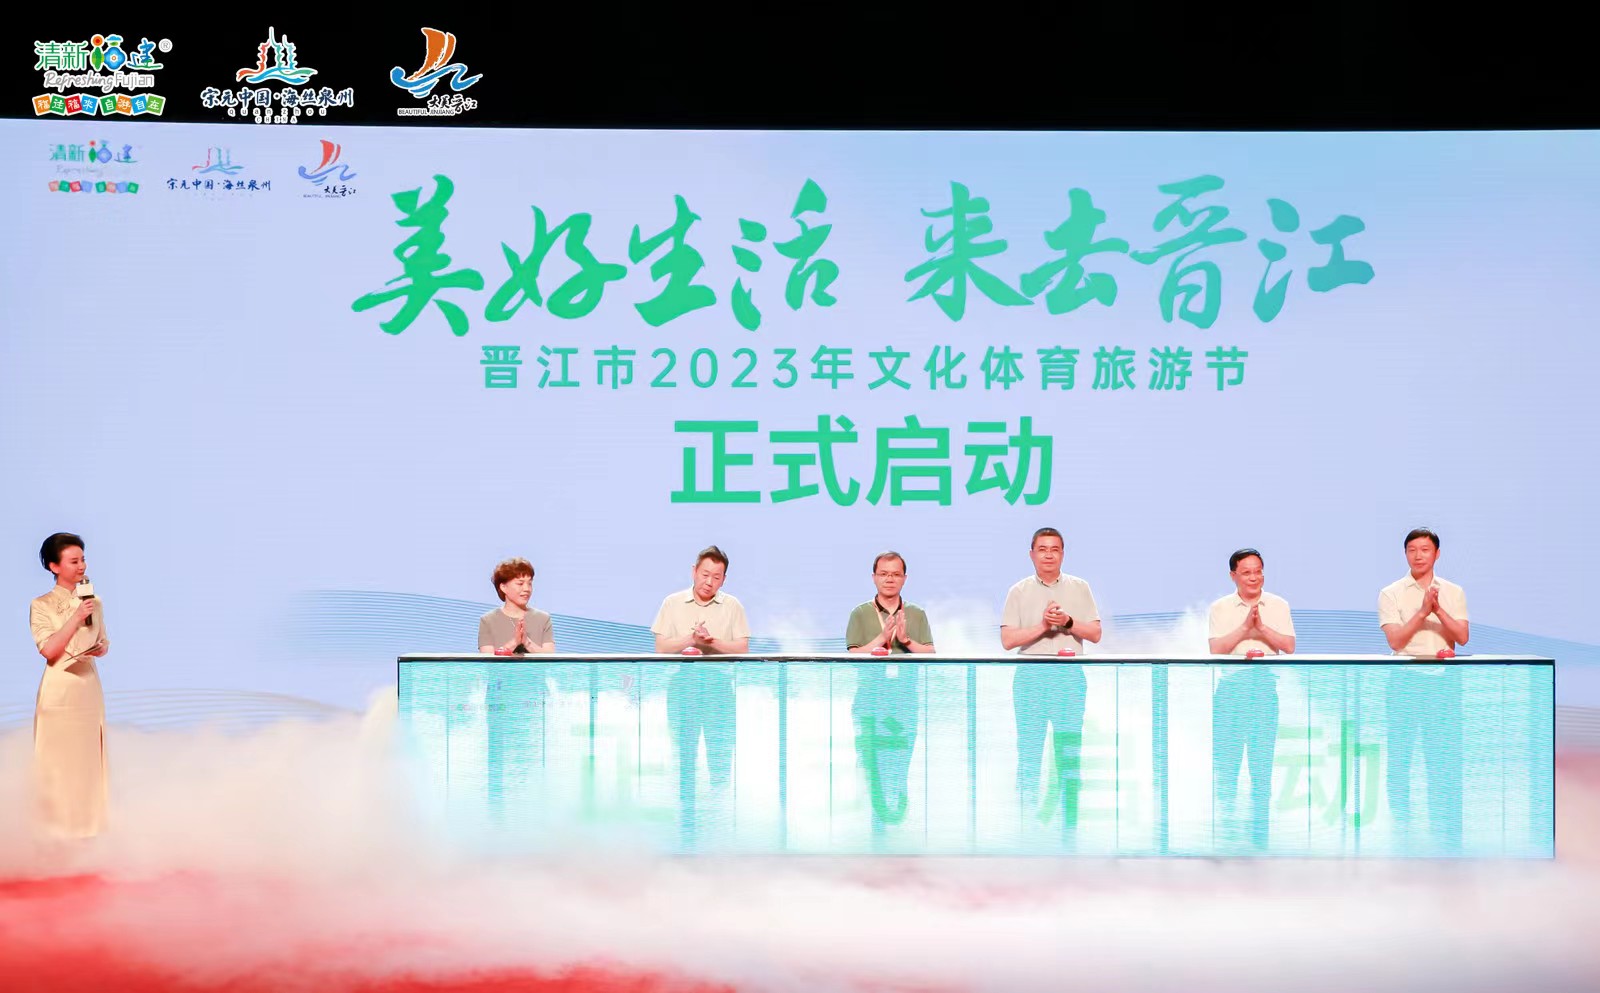 福建晉江2023年文化體育旅遊節正式啟動